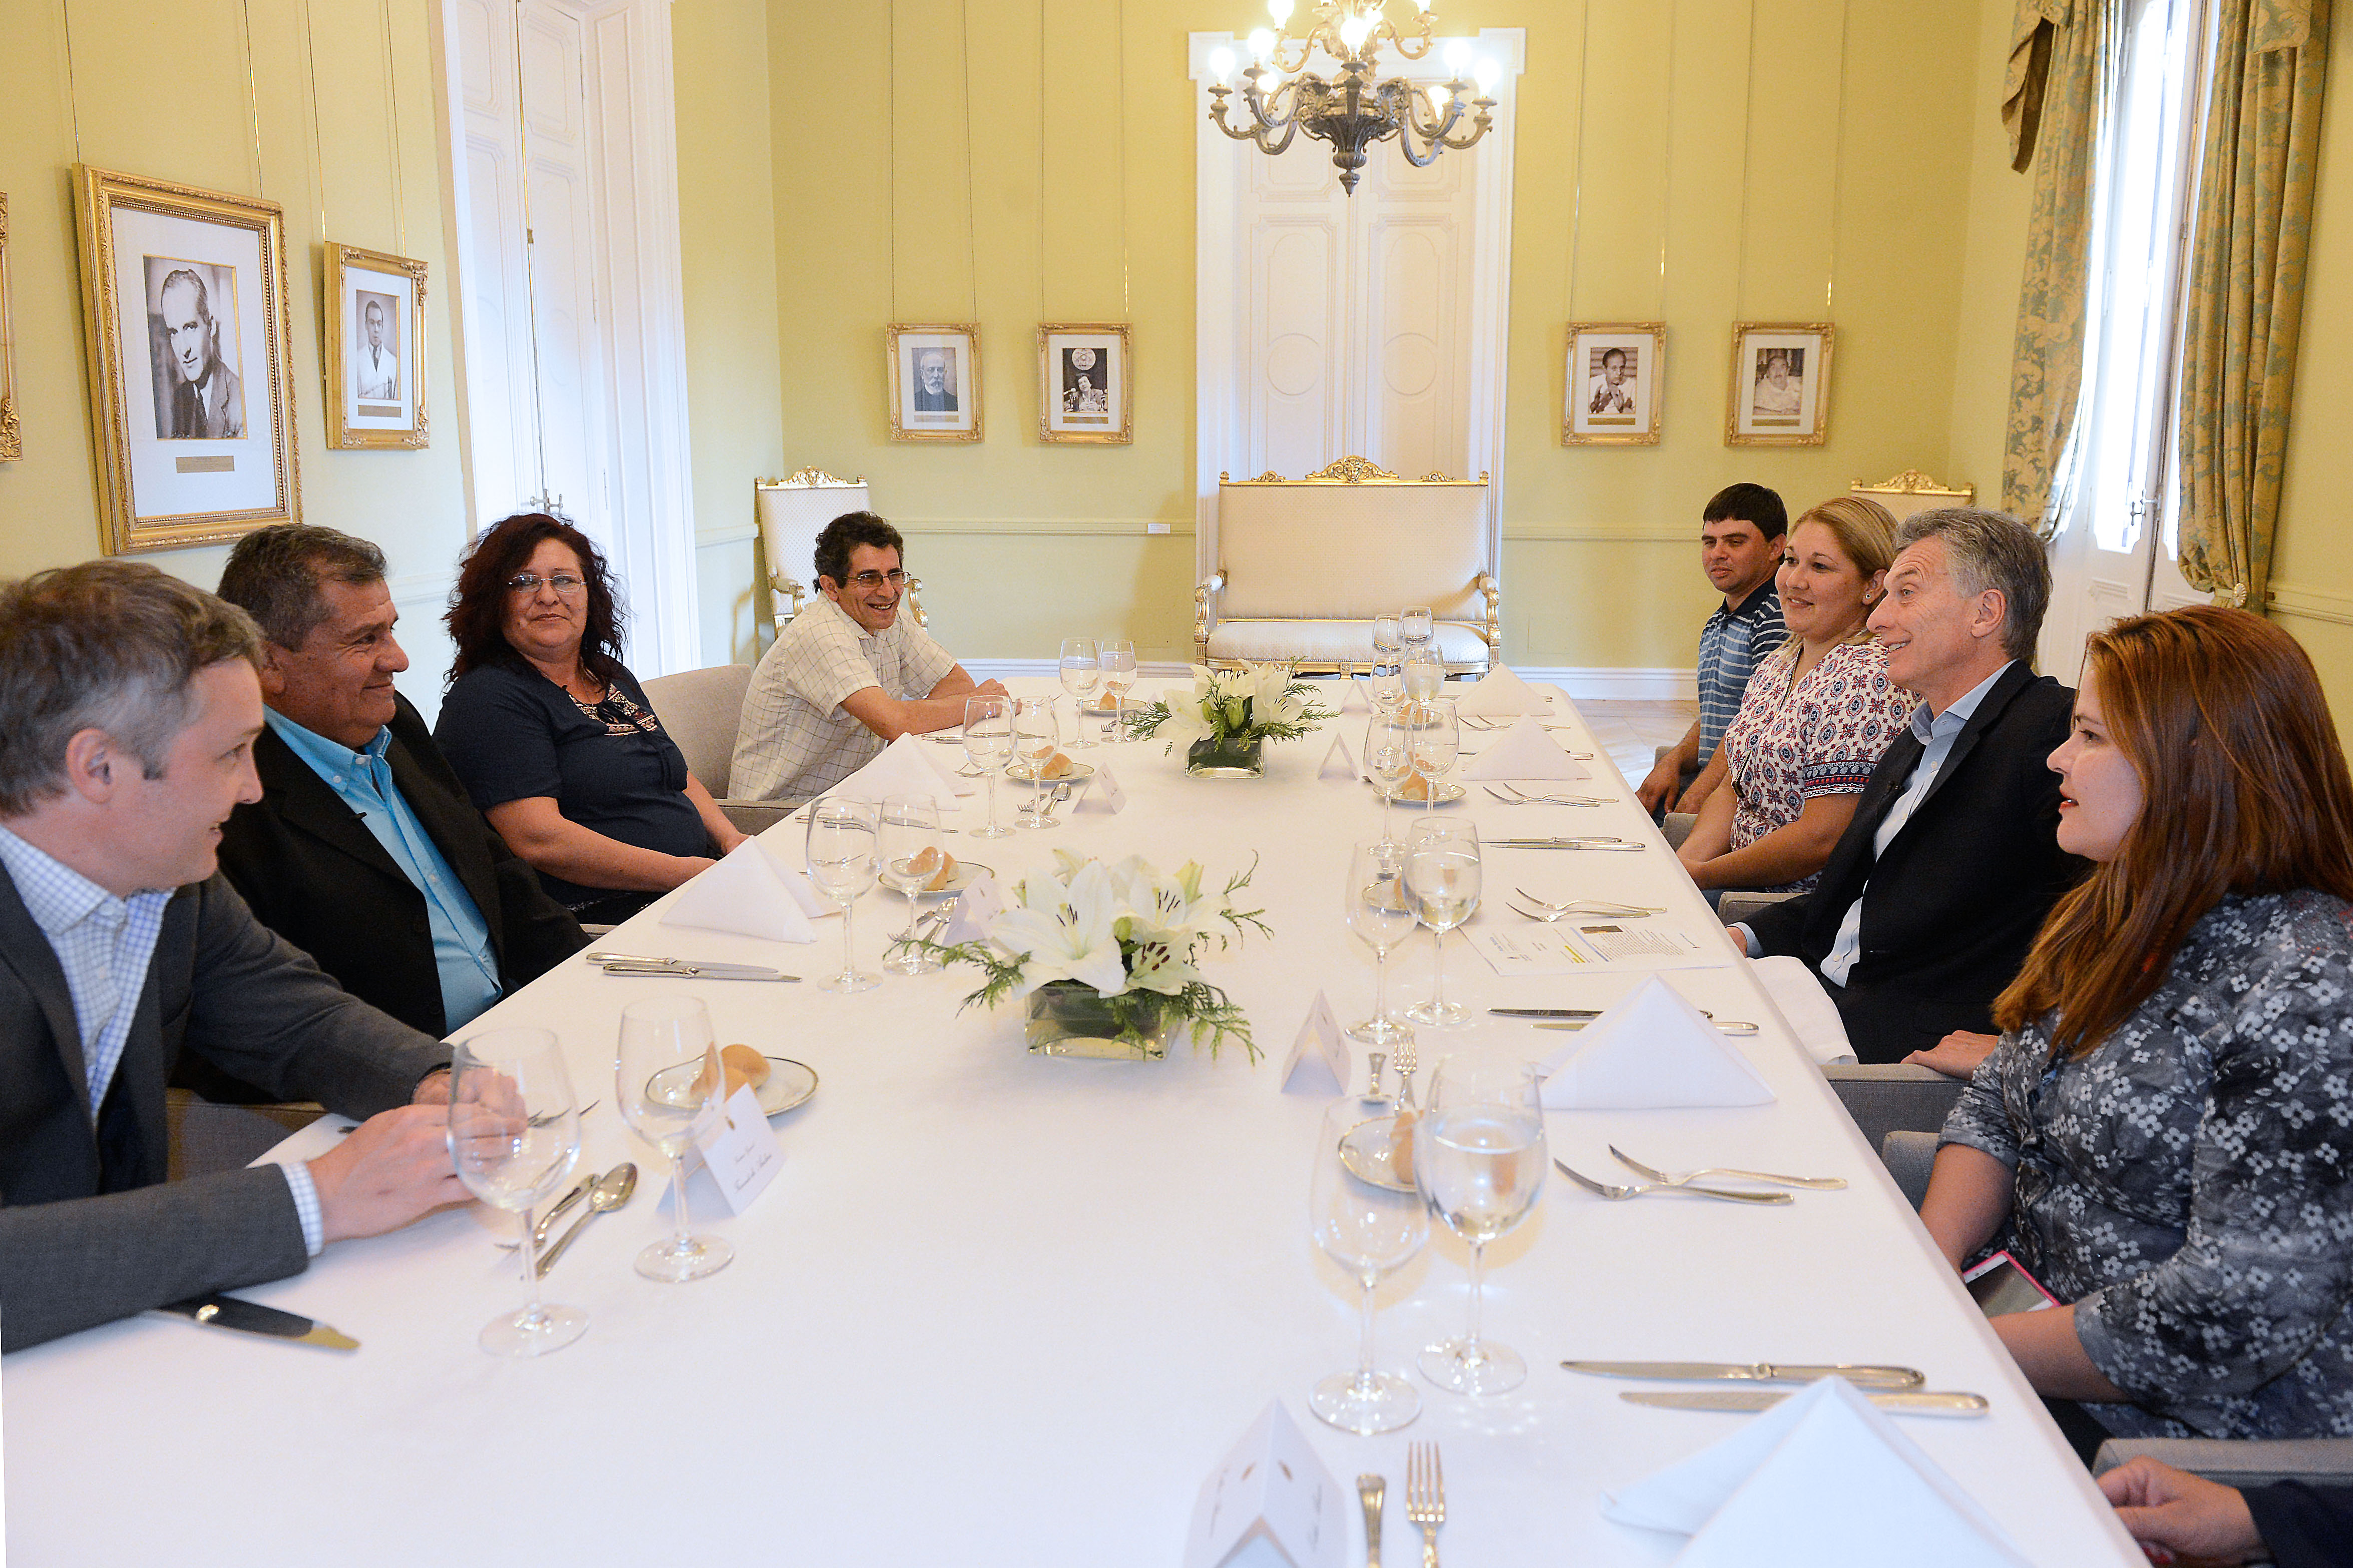 El Presidente almorzó con vecinos a los que había visitado en 2015